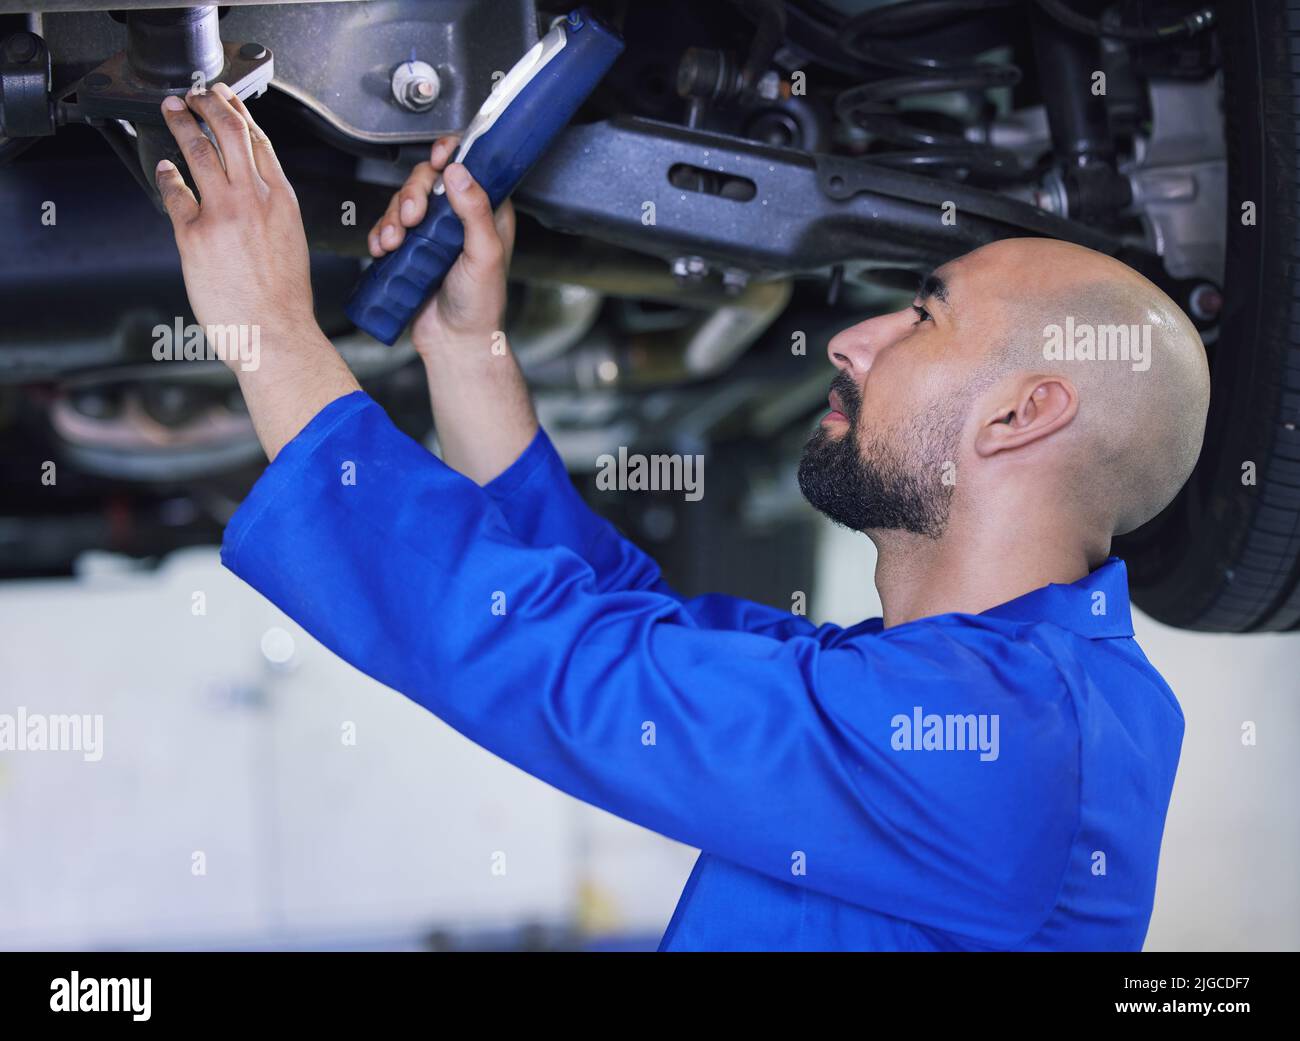 Briller un peu de lumière sur cette situation. Un beau jeune homme mécanicien travaillant sur le moteur d'une voiture pendant un service. Banque D'Images